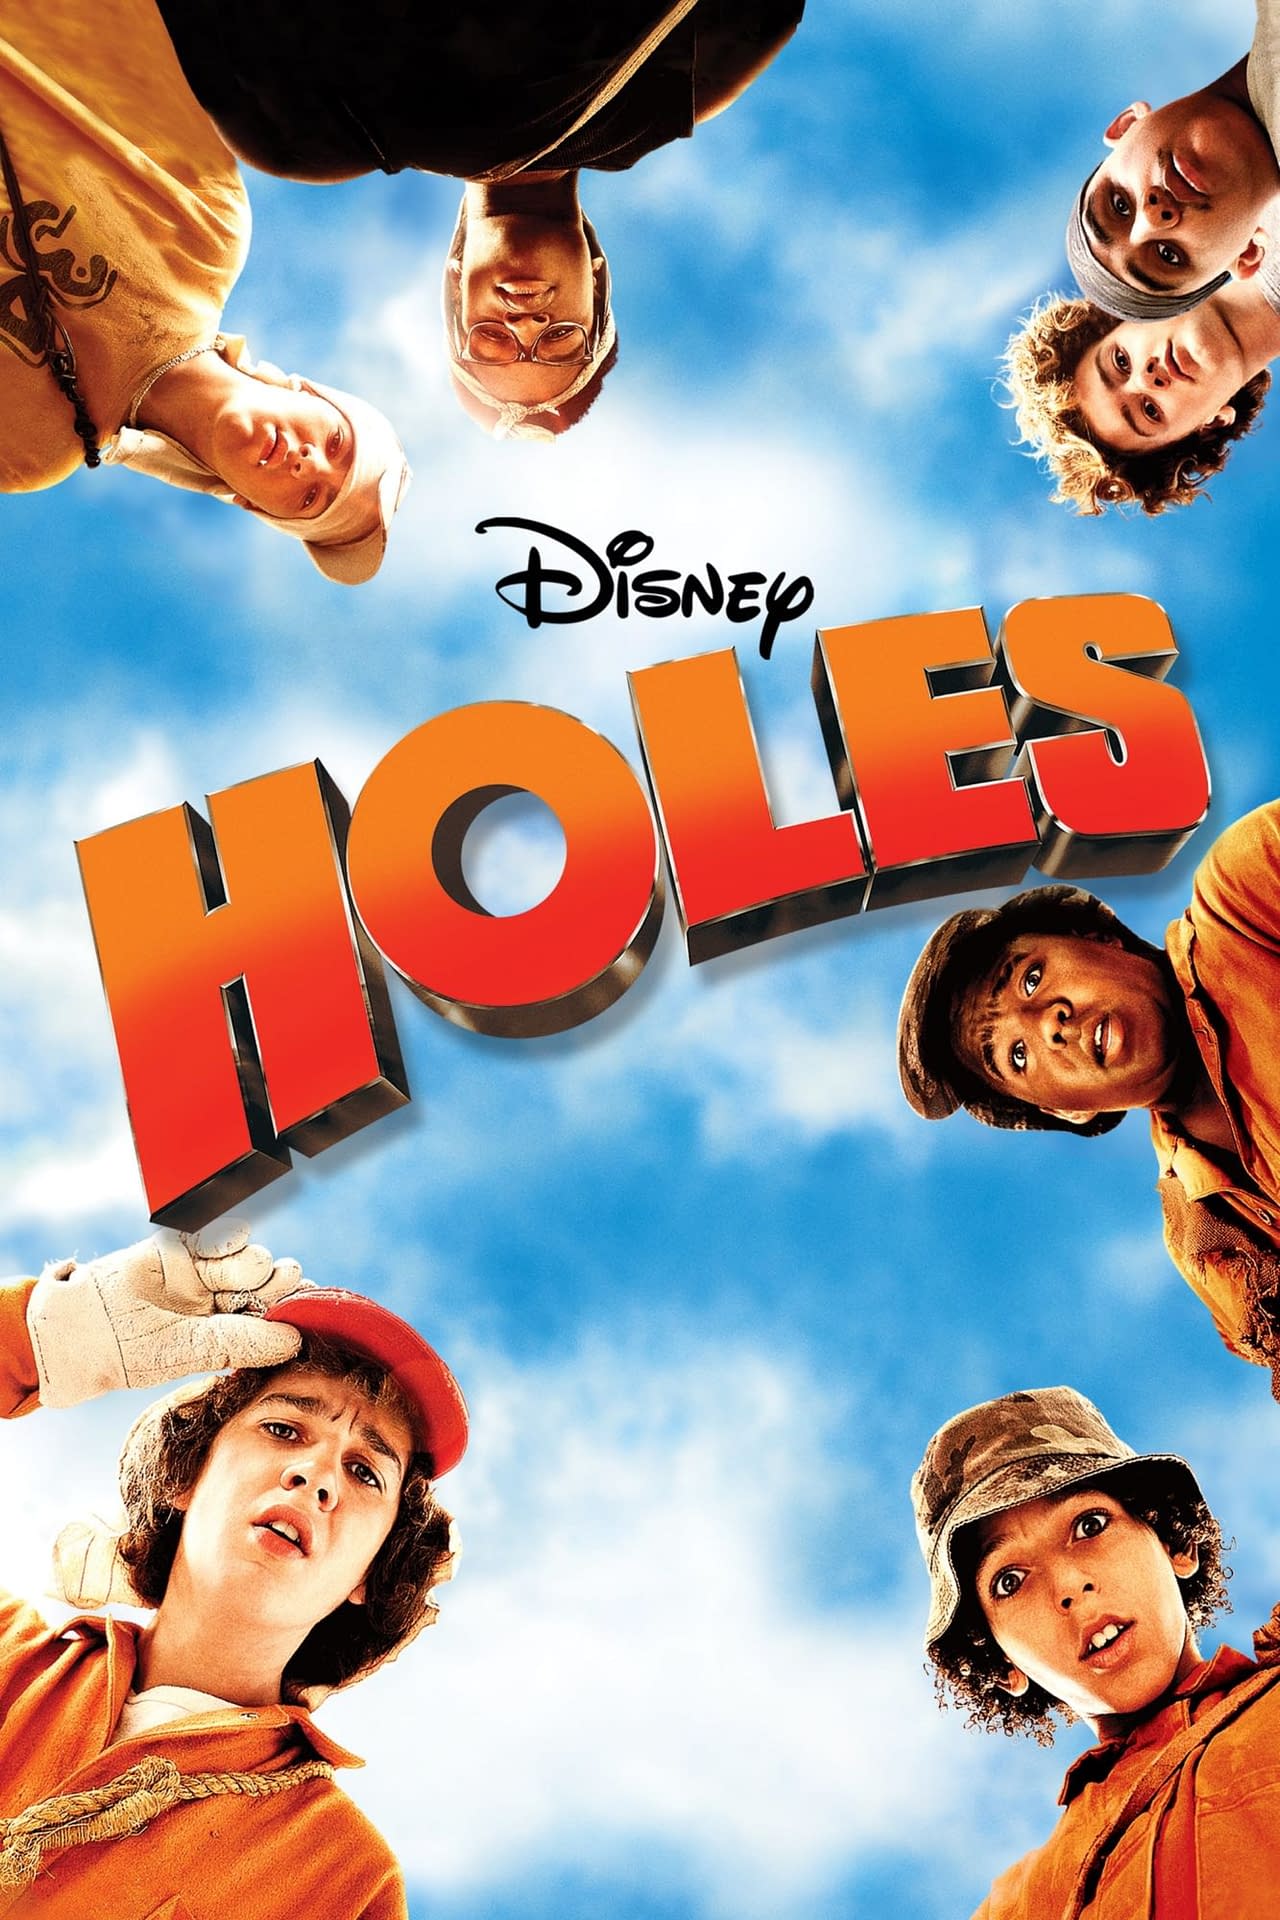 Disney's Holes